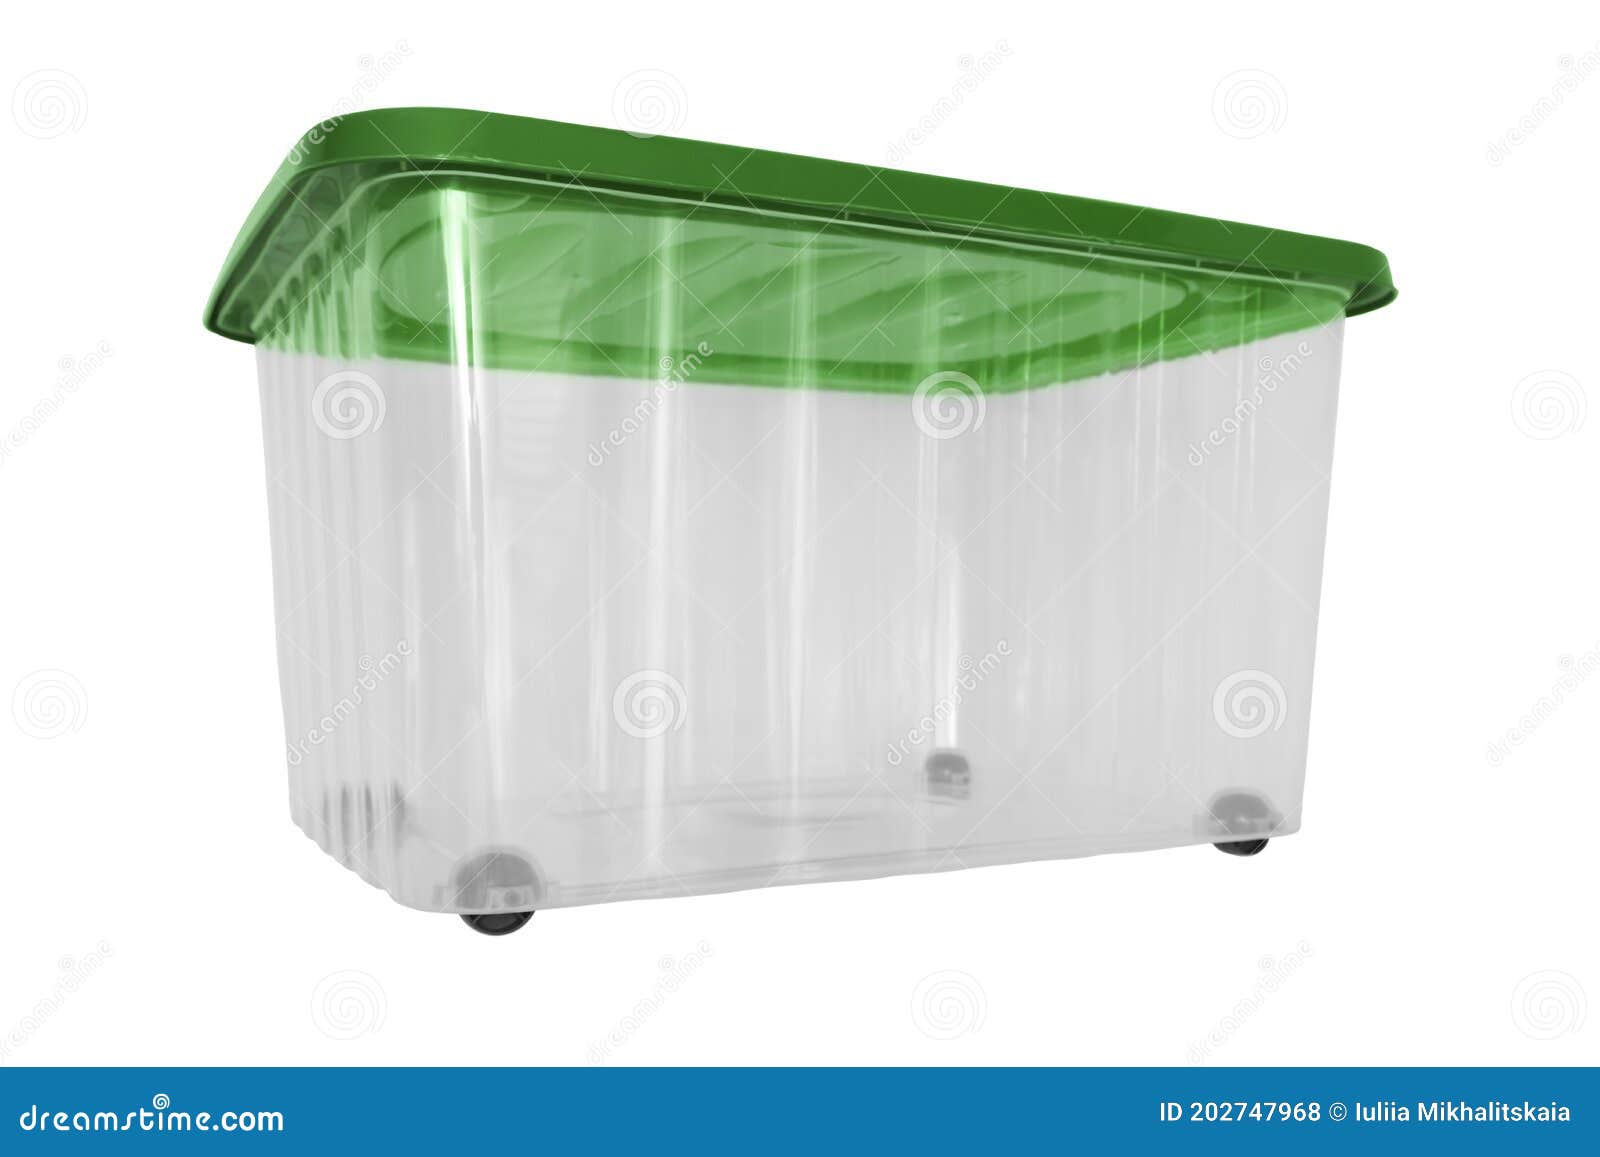 Una Caja De Almacenamiento De Grandes Portátiles De Plástico Transparente Sobre Ruedas Con Cubierta Verde Para Equipo de archivo - de limpio, nuevo: 202747968